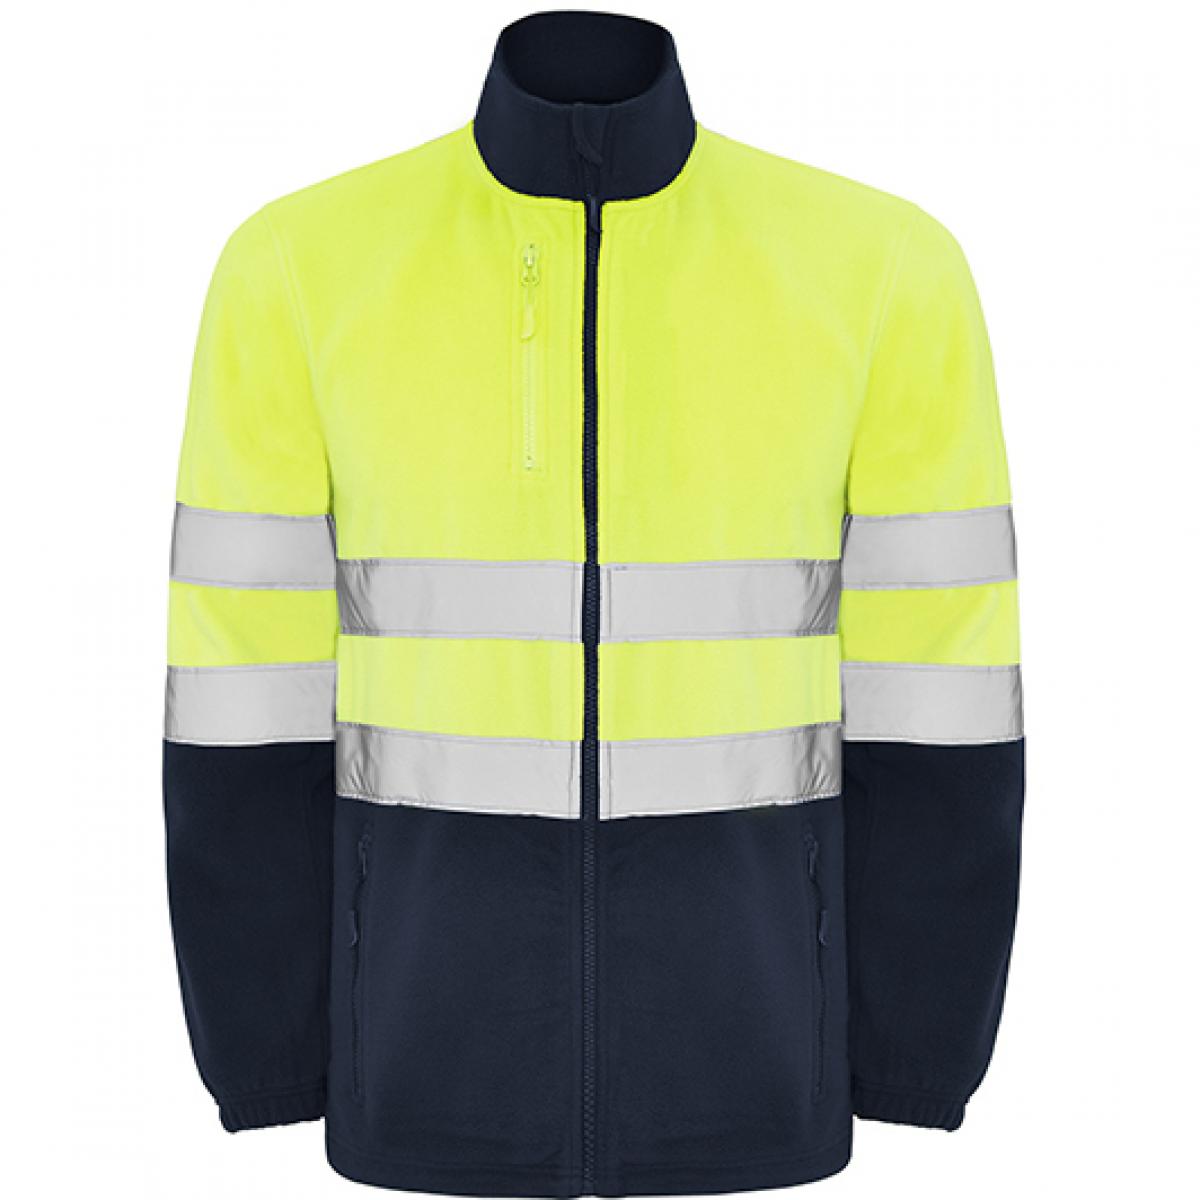 Hersteller: Roly Workwear Herstellernummer: HV9305 Artikelbezeichnung: Altair Hi-Viz Fleece Jacke mit Reflektionsstreifen Farbe: Navy Blue 55/Fluor Yellow 221